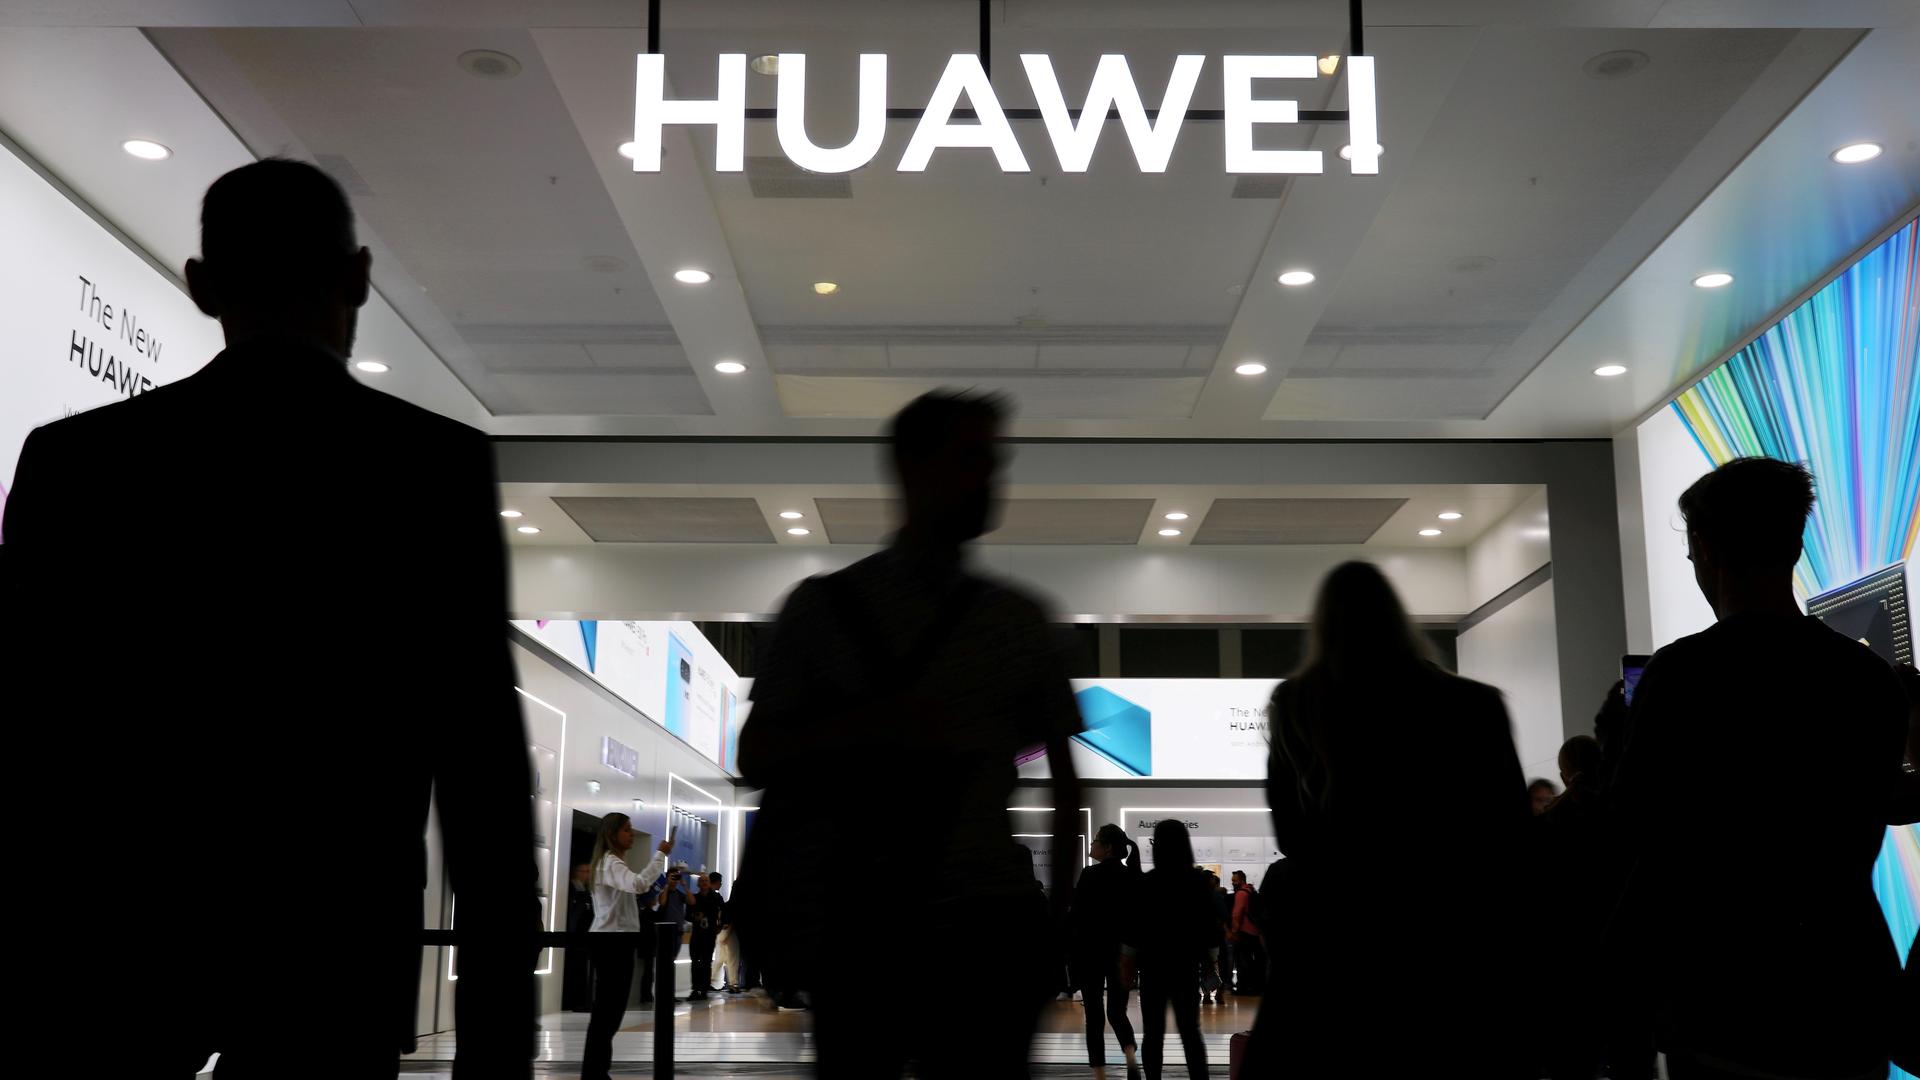 The Huawei logo 